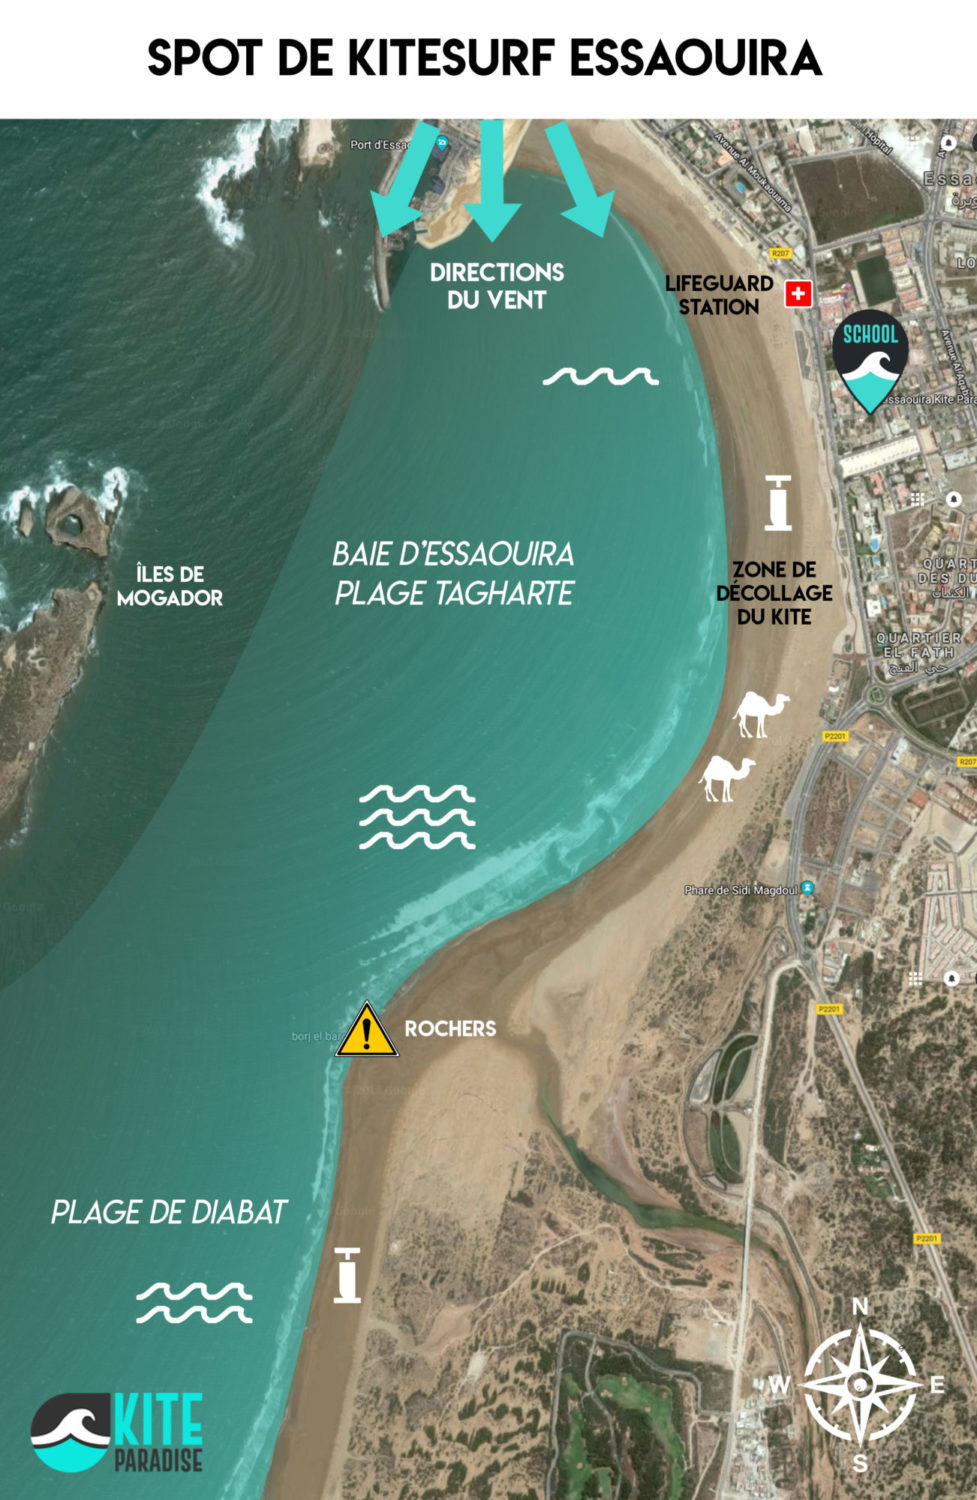 Essaouira plan du spot de kitesurf